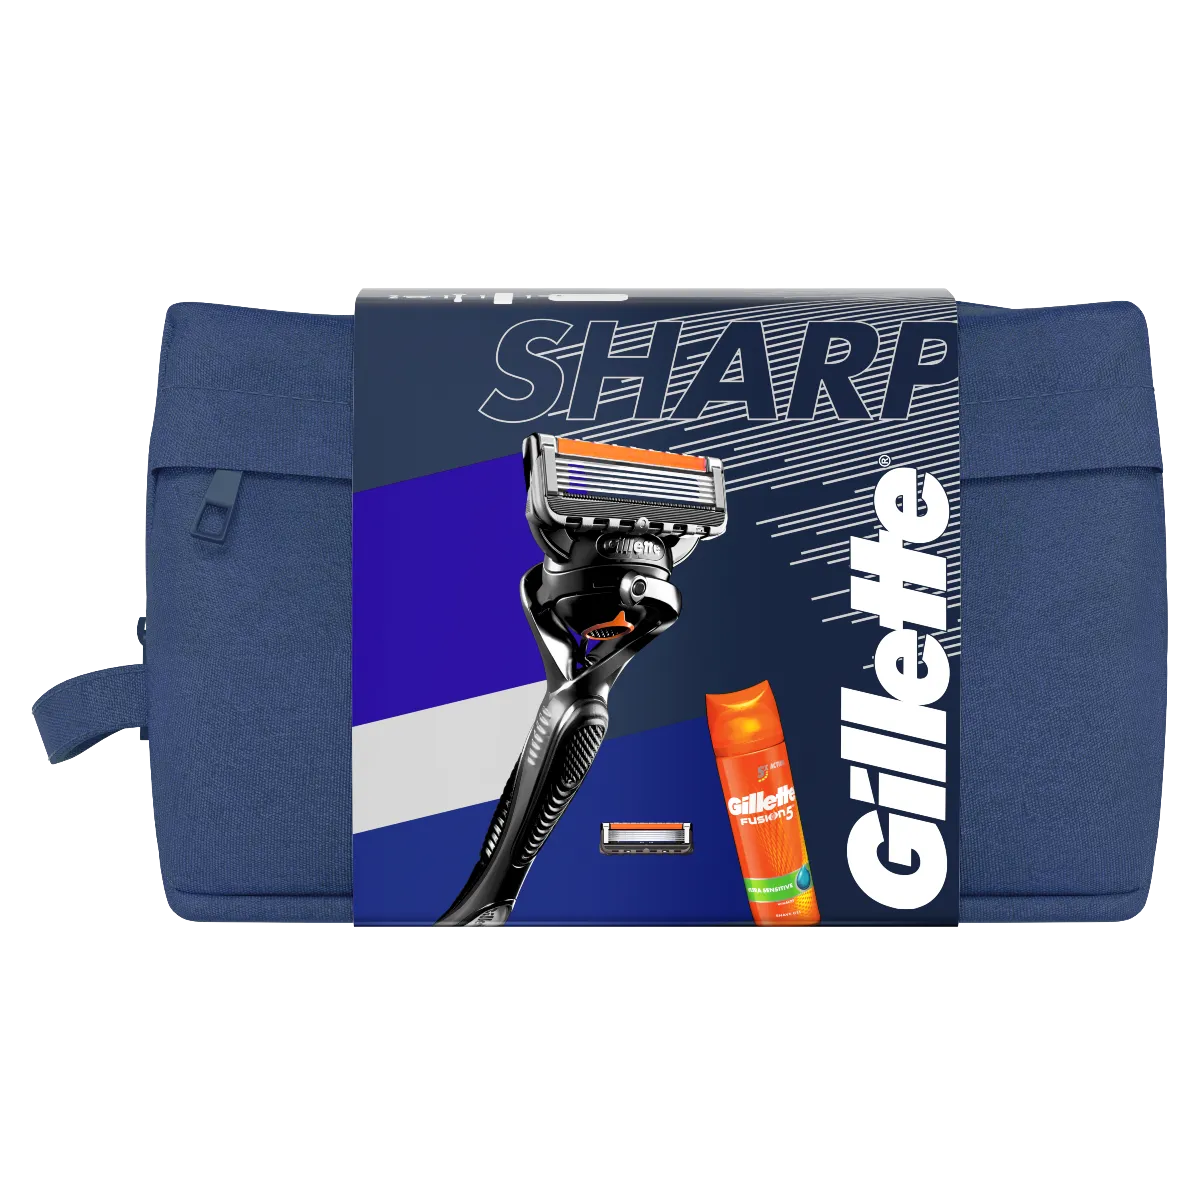 Gillette SHARP darčekové balenie pre mužov 1×1 set, žiletka s gélom na holenie